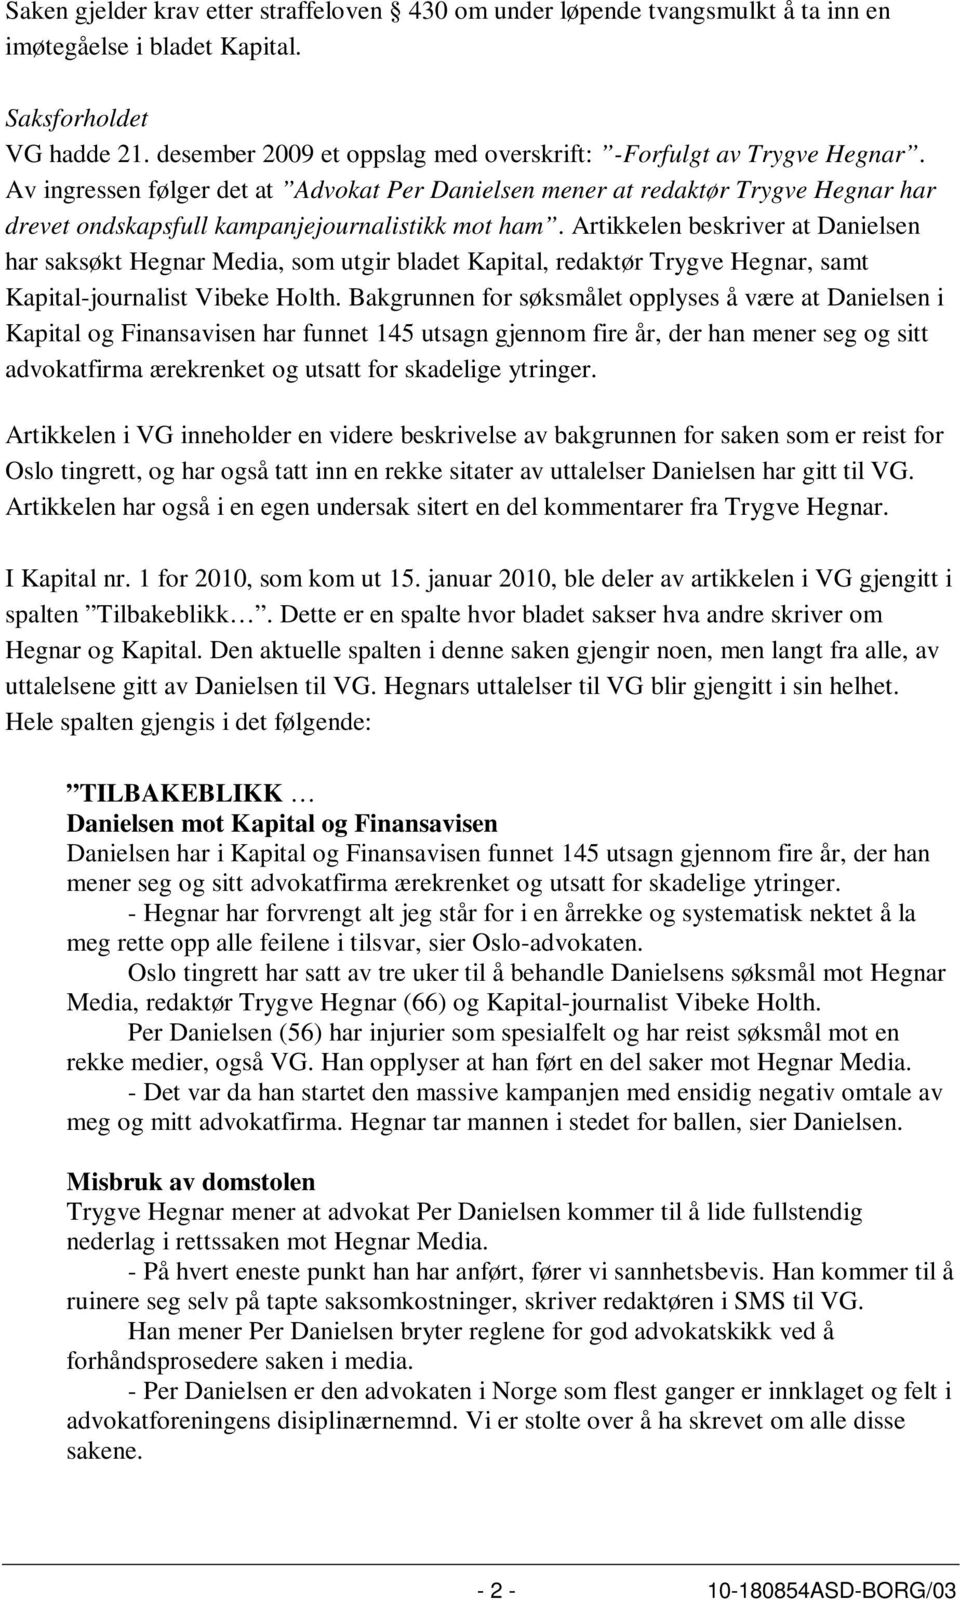 Av ingressen følger det at Advokat Per Danielsen mener at redaktør Trygve Hegnar har drevet ondskapsfull kampanjejournalistikk mot ham.